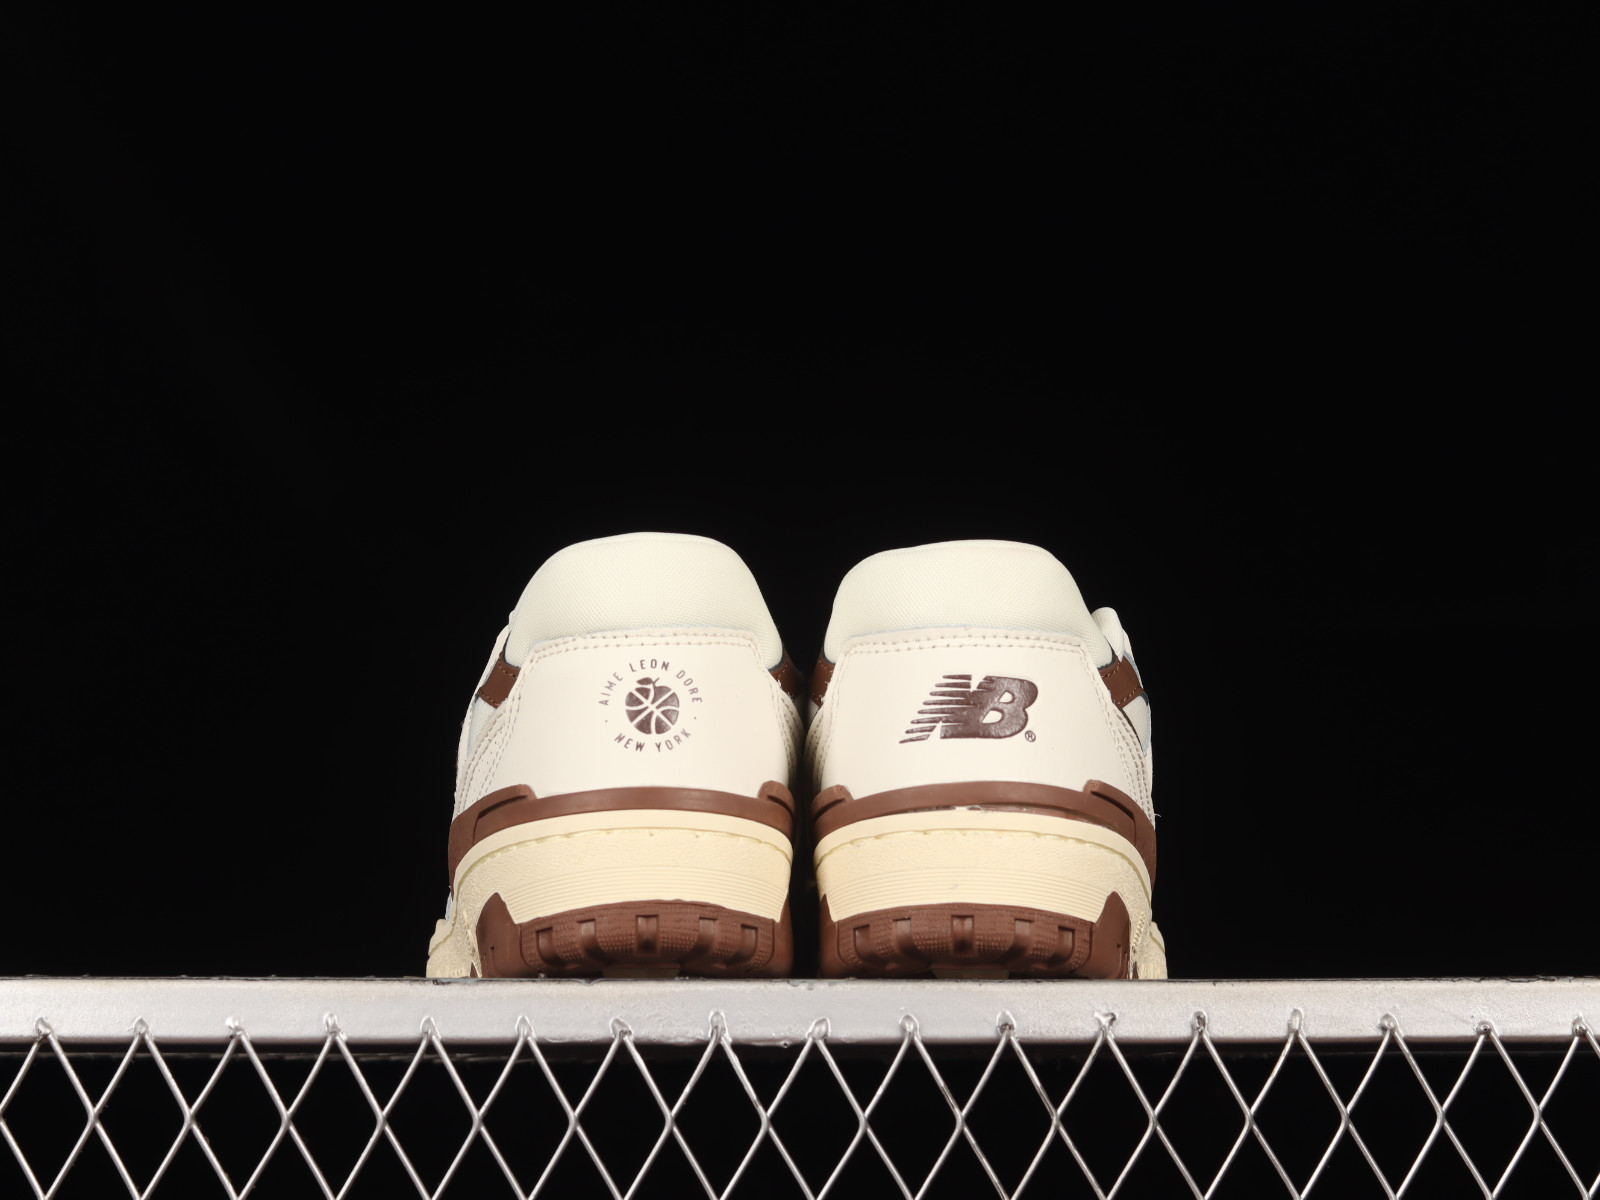 New Balance 550 x Aime Leon Dore ALD Brown White Cream Sneaker BB550AB1  Size 8